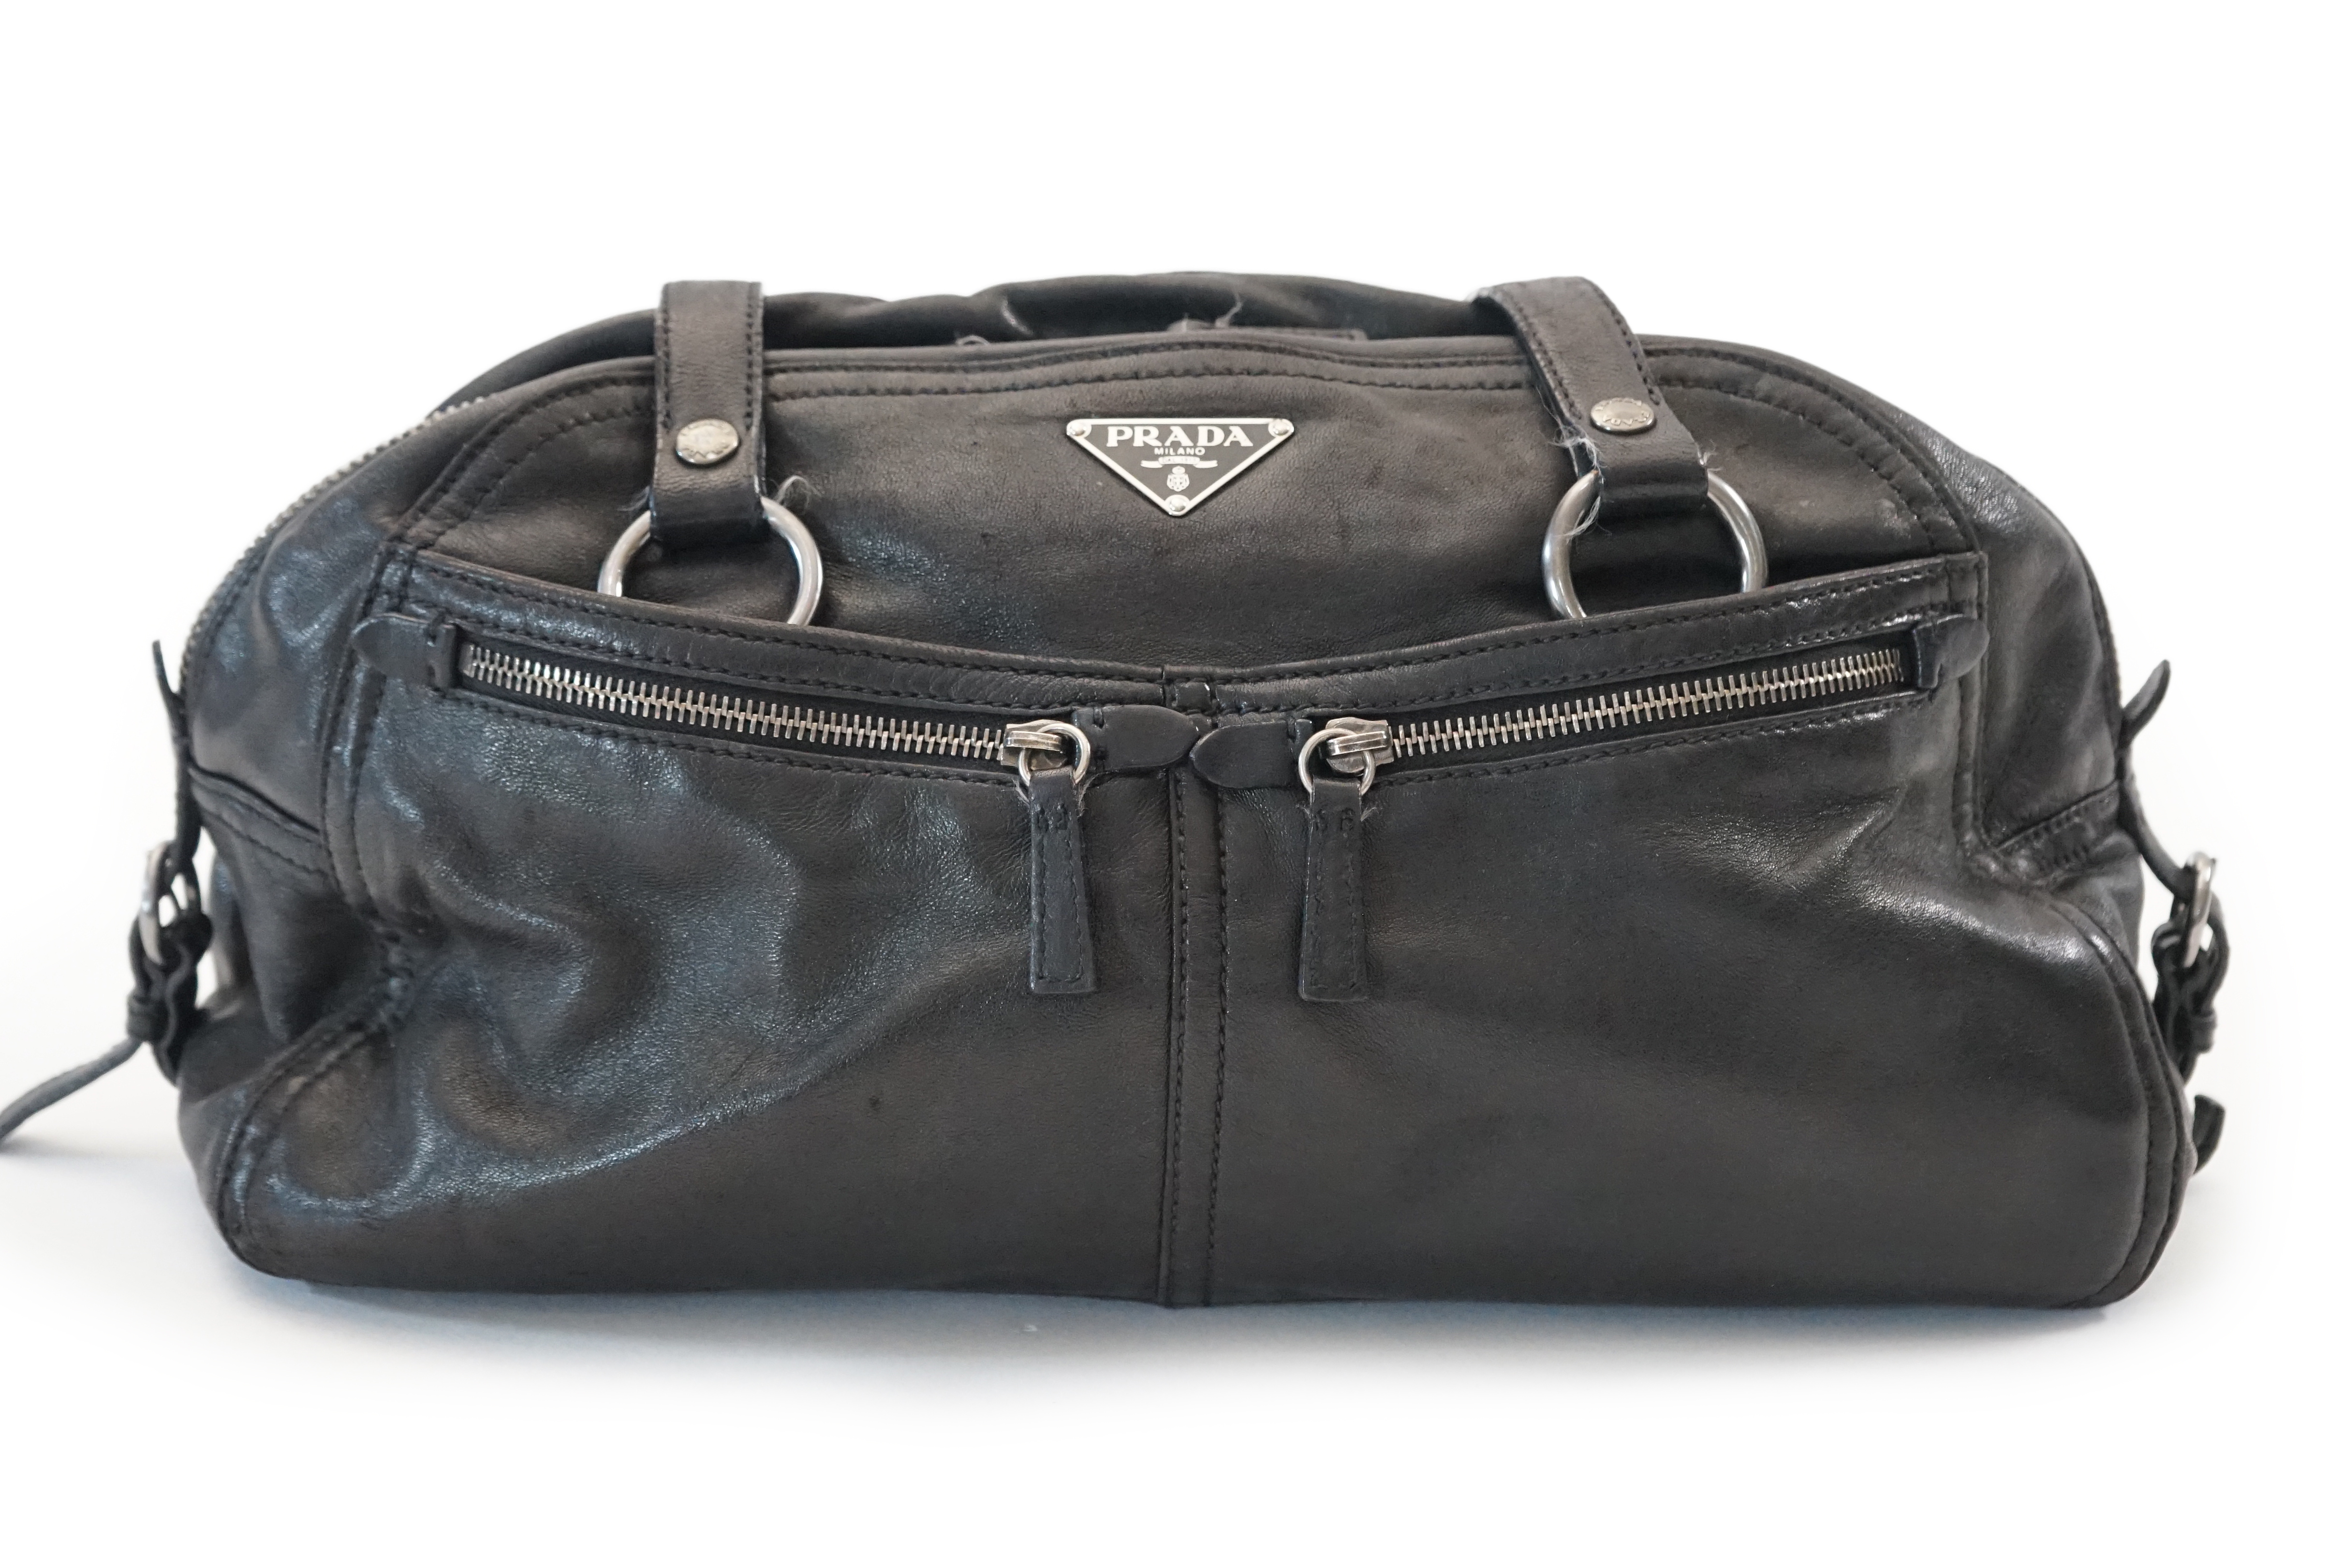 A Prada Cargo black leather handbag, width 38cm, depth 12cm, height approx 22cm